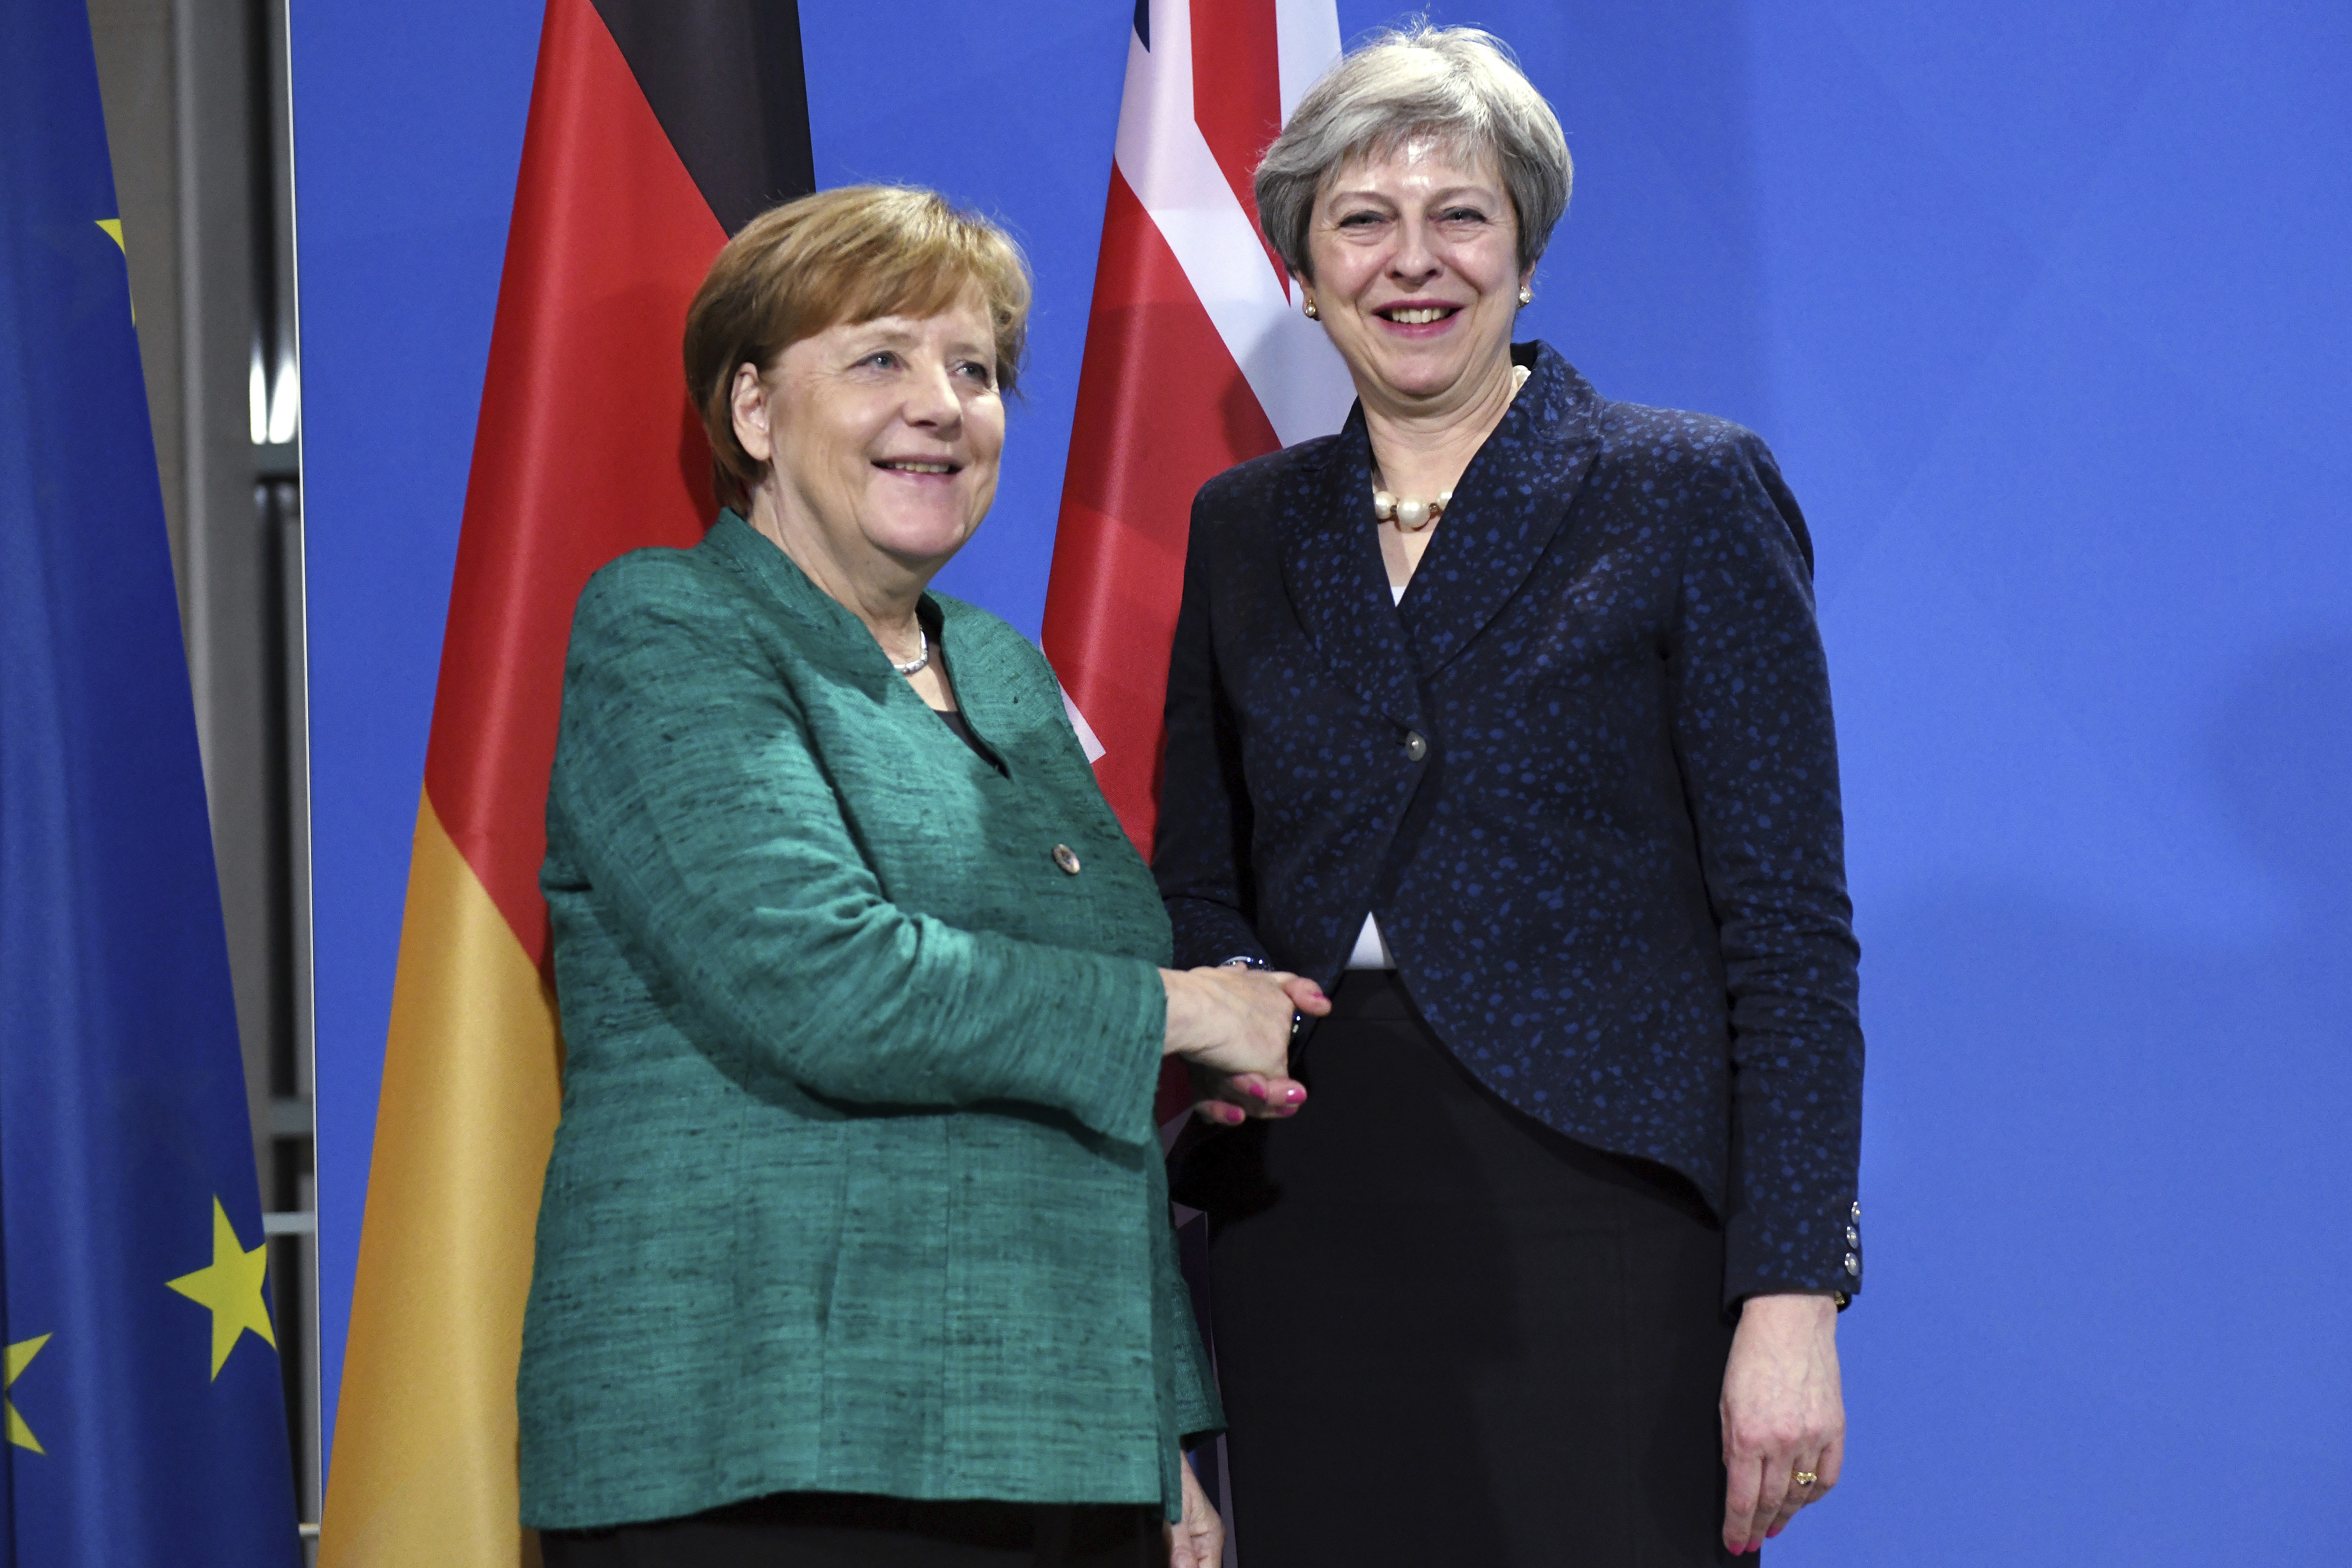 Меркел се придържаше към оптимистичен тон след срещата, която тя определи като ”много конструктивна” и ”приятелска”